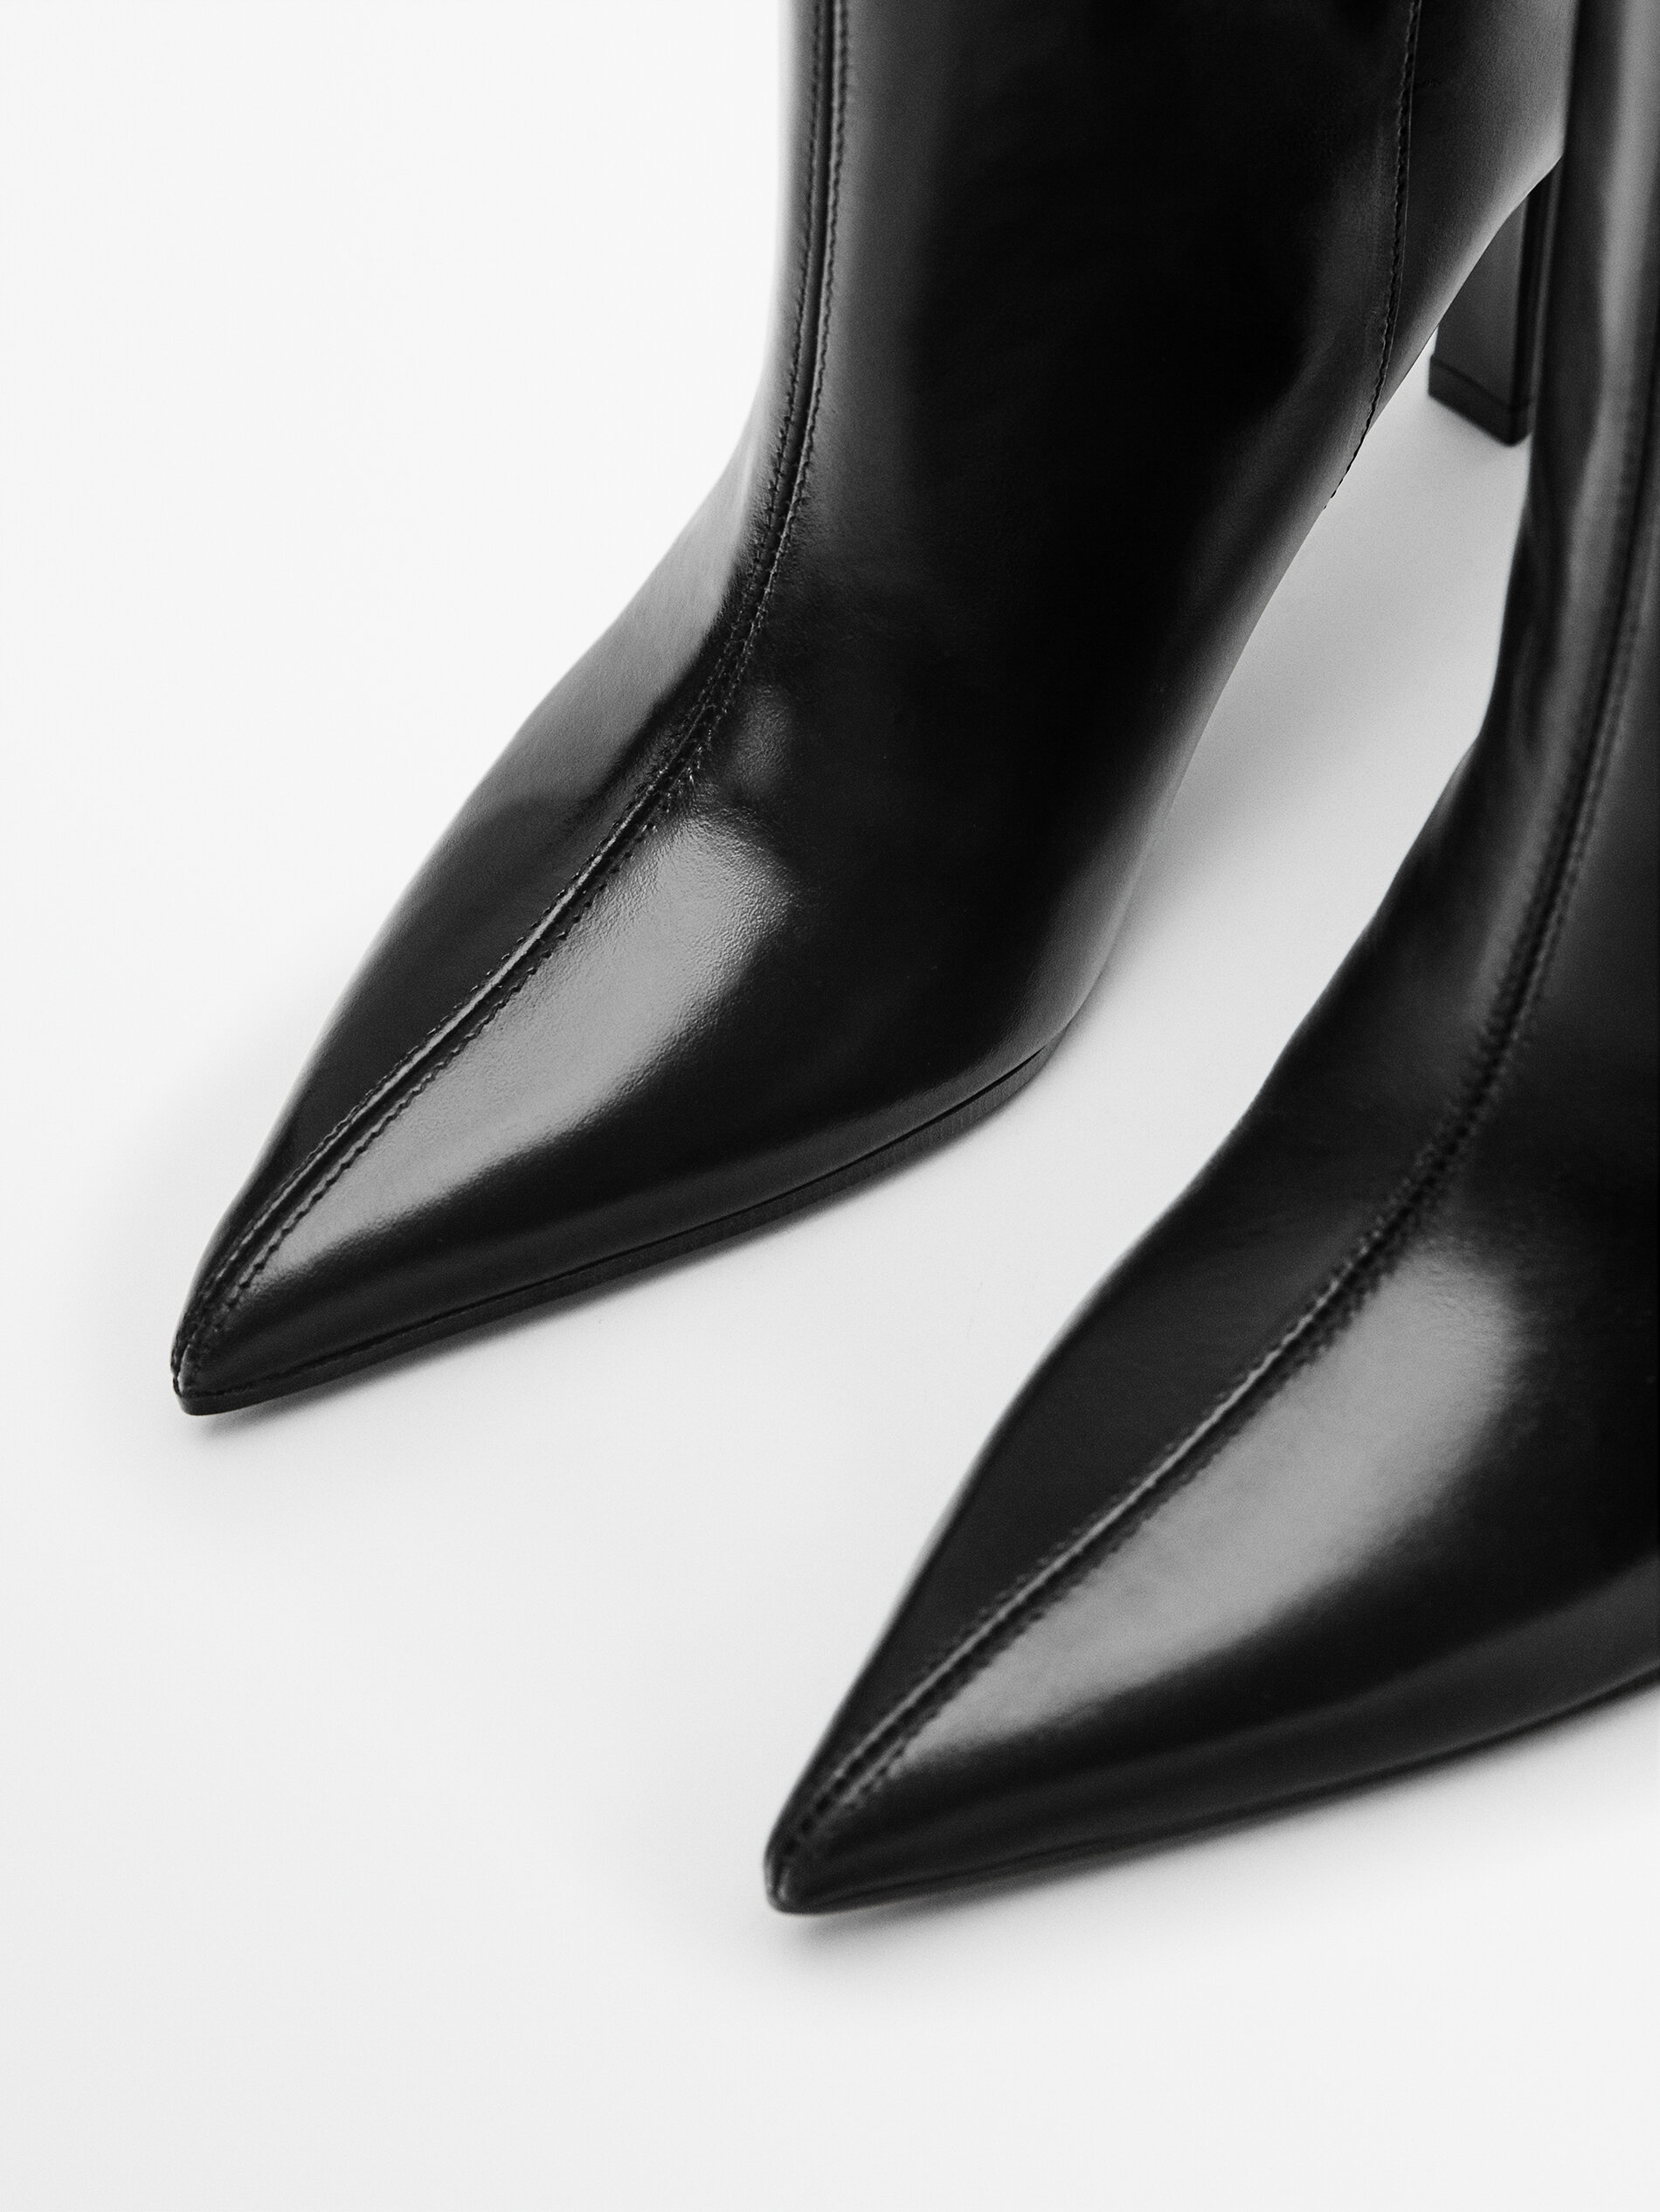 Schoenen Enkellaarsjes met hak Aanrijglaarsjes Massimo Dutti Aanrijglaarsjes zwart casual uitstraling 